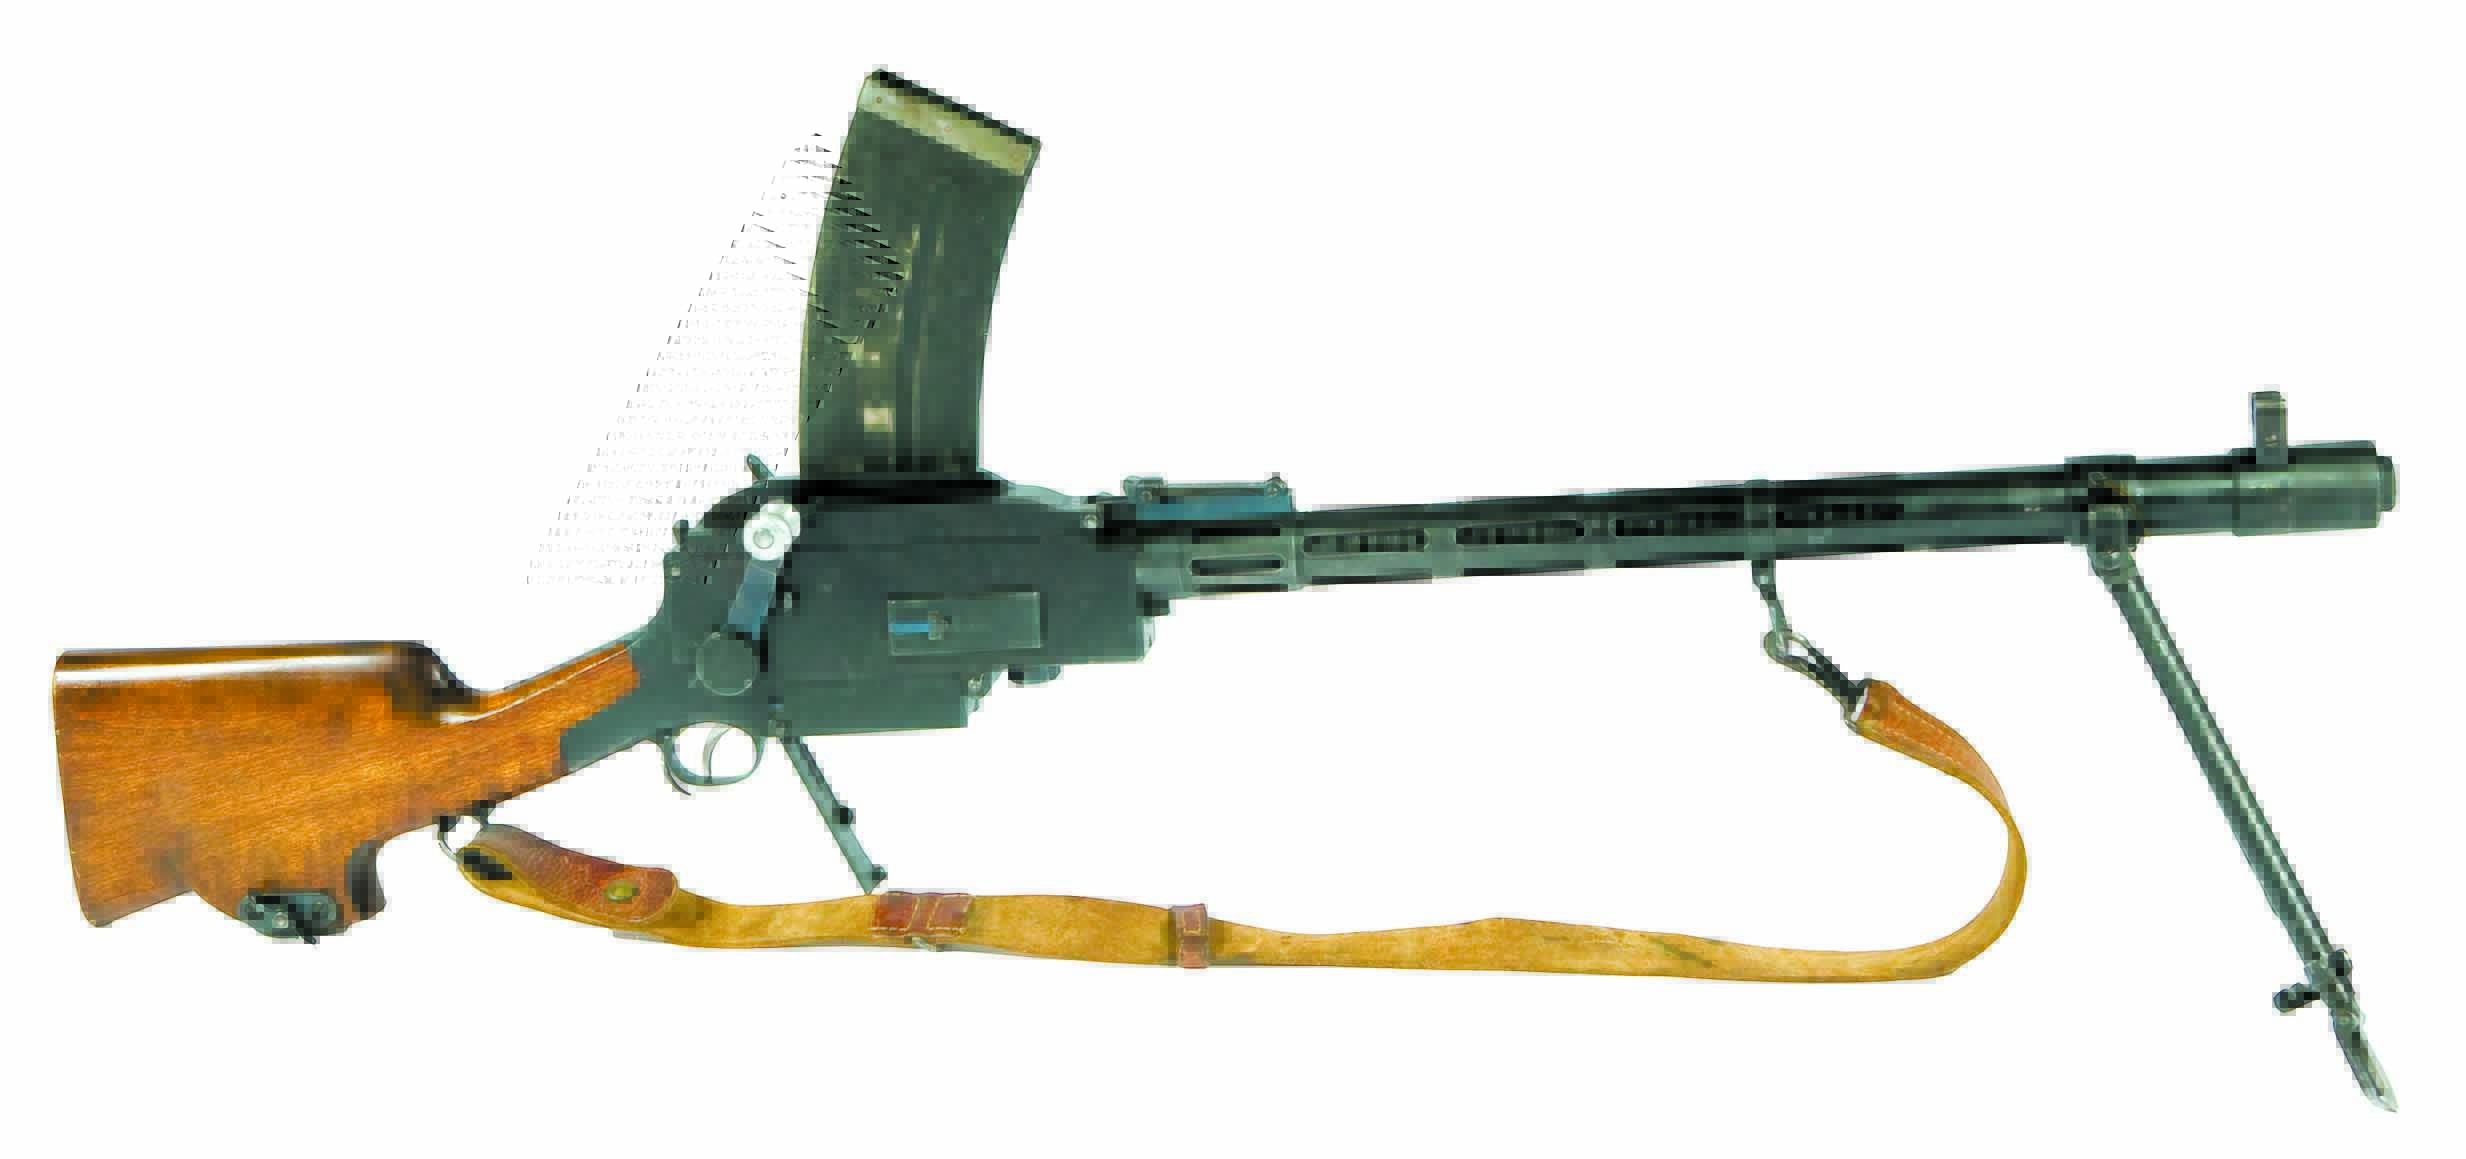 轻武器科普之PK/PKM系列通用机枪简介 - 哔哩哔哩